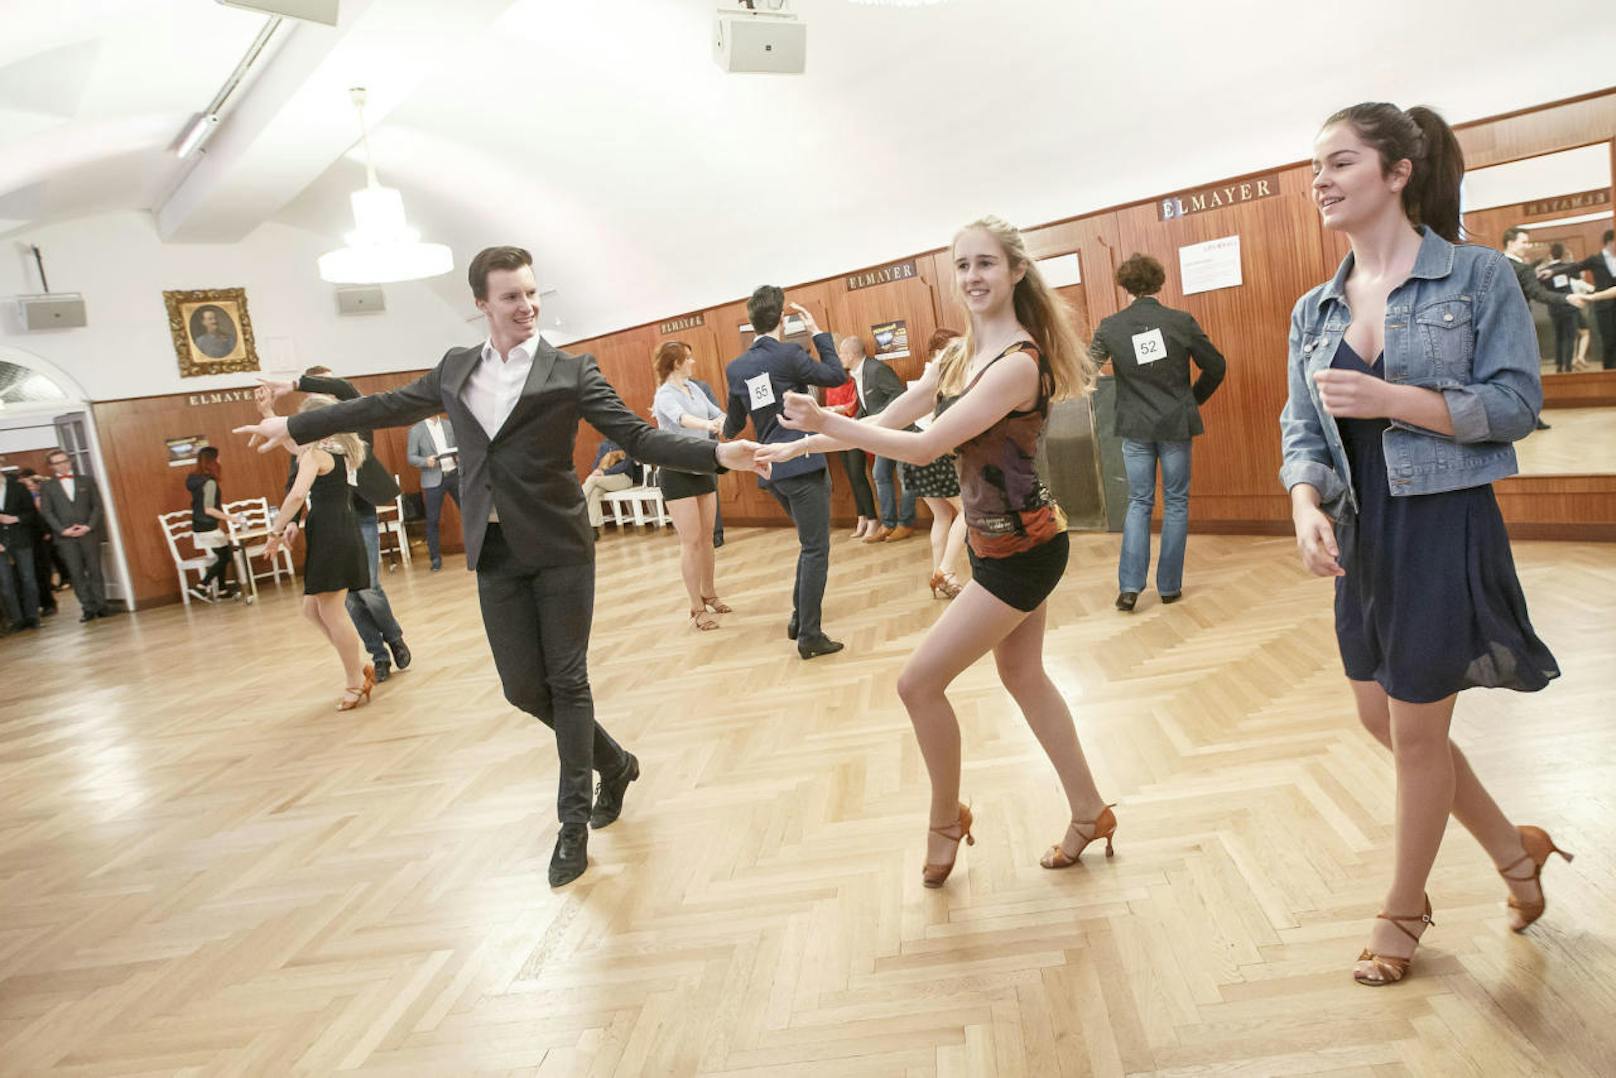 100 Tanzpaare kamen am Sonntag zum Vortanzen in die Tanzschule Elmayer.